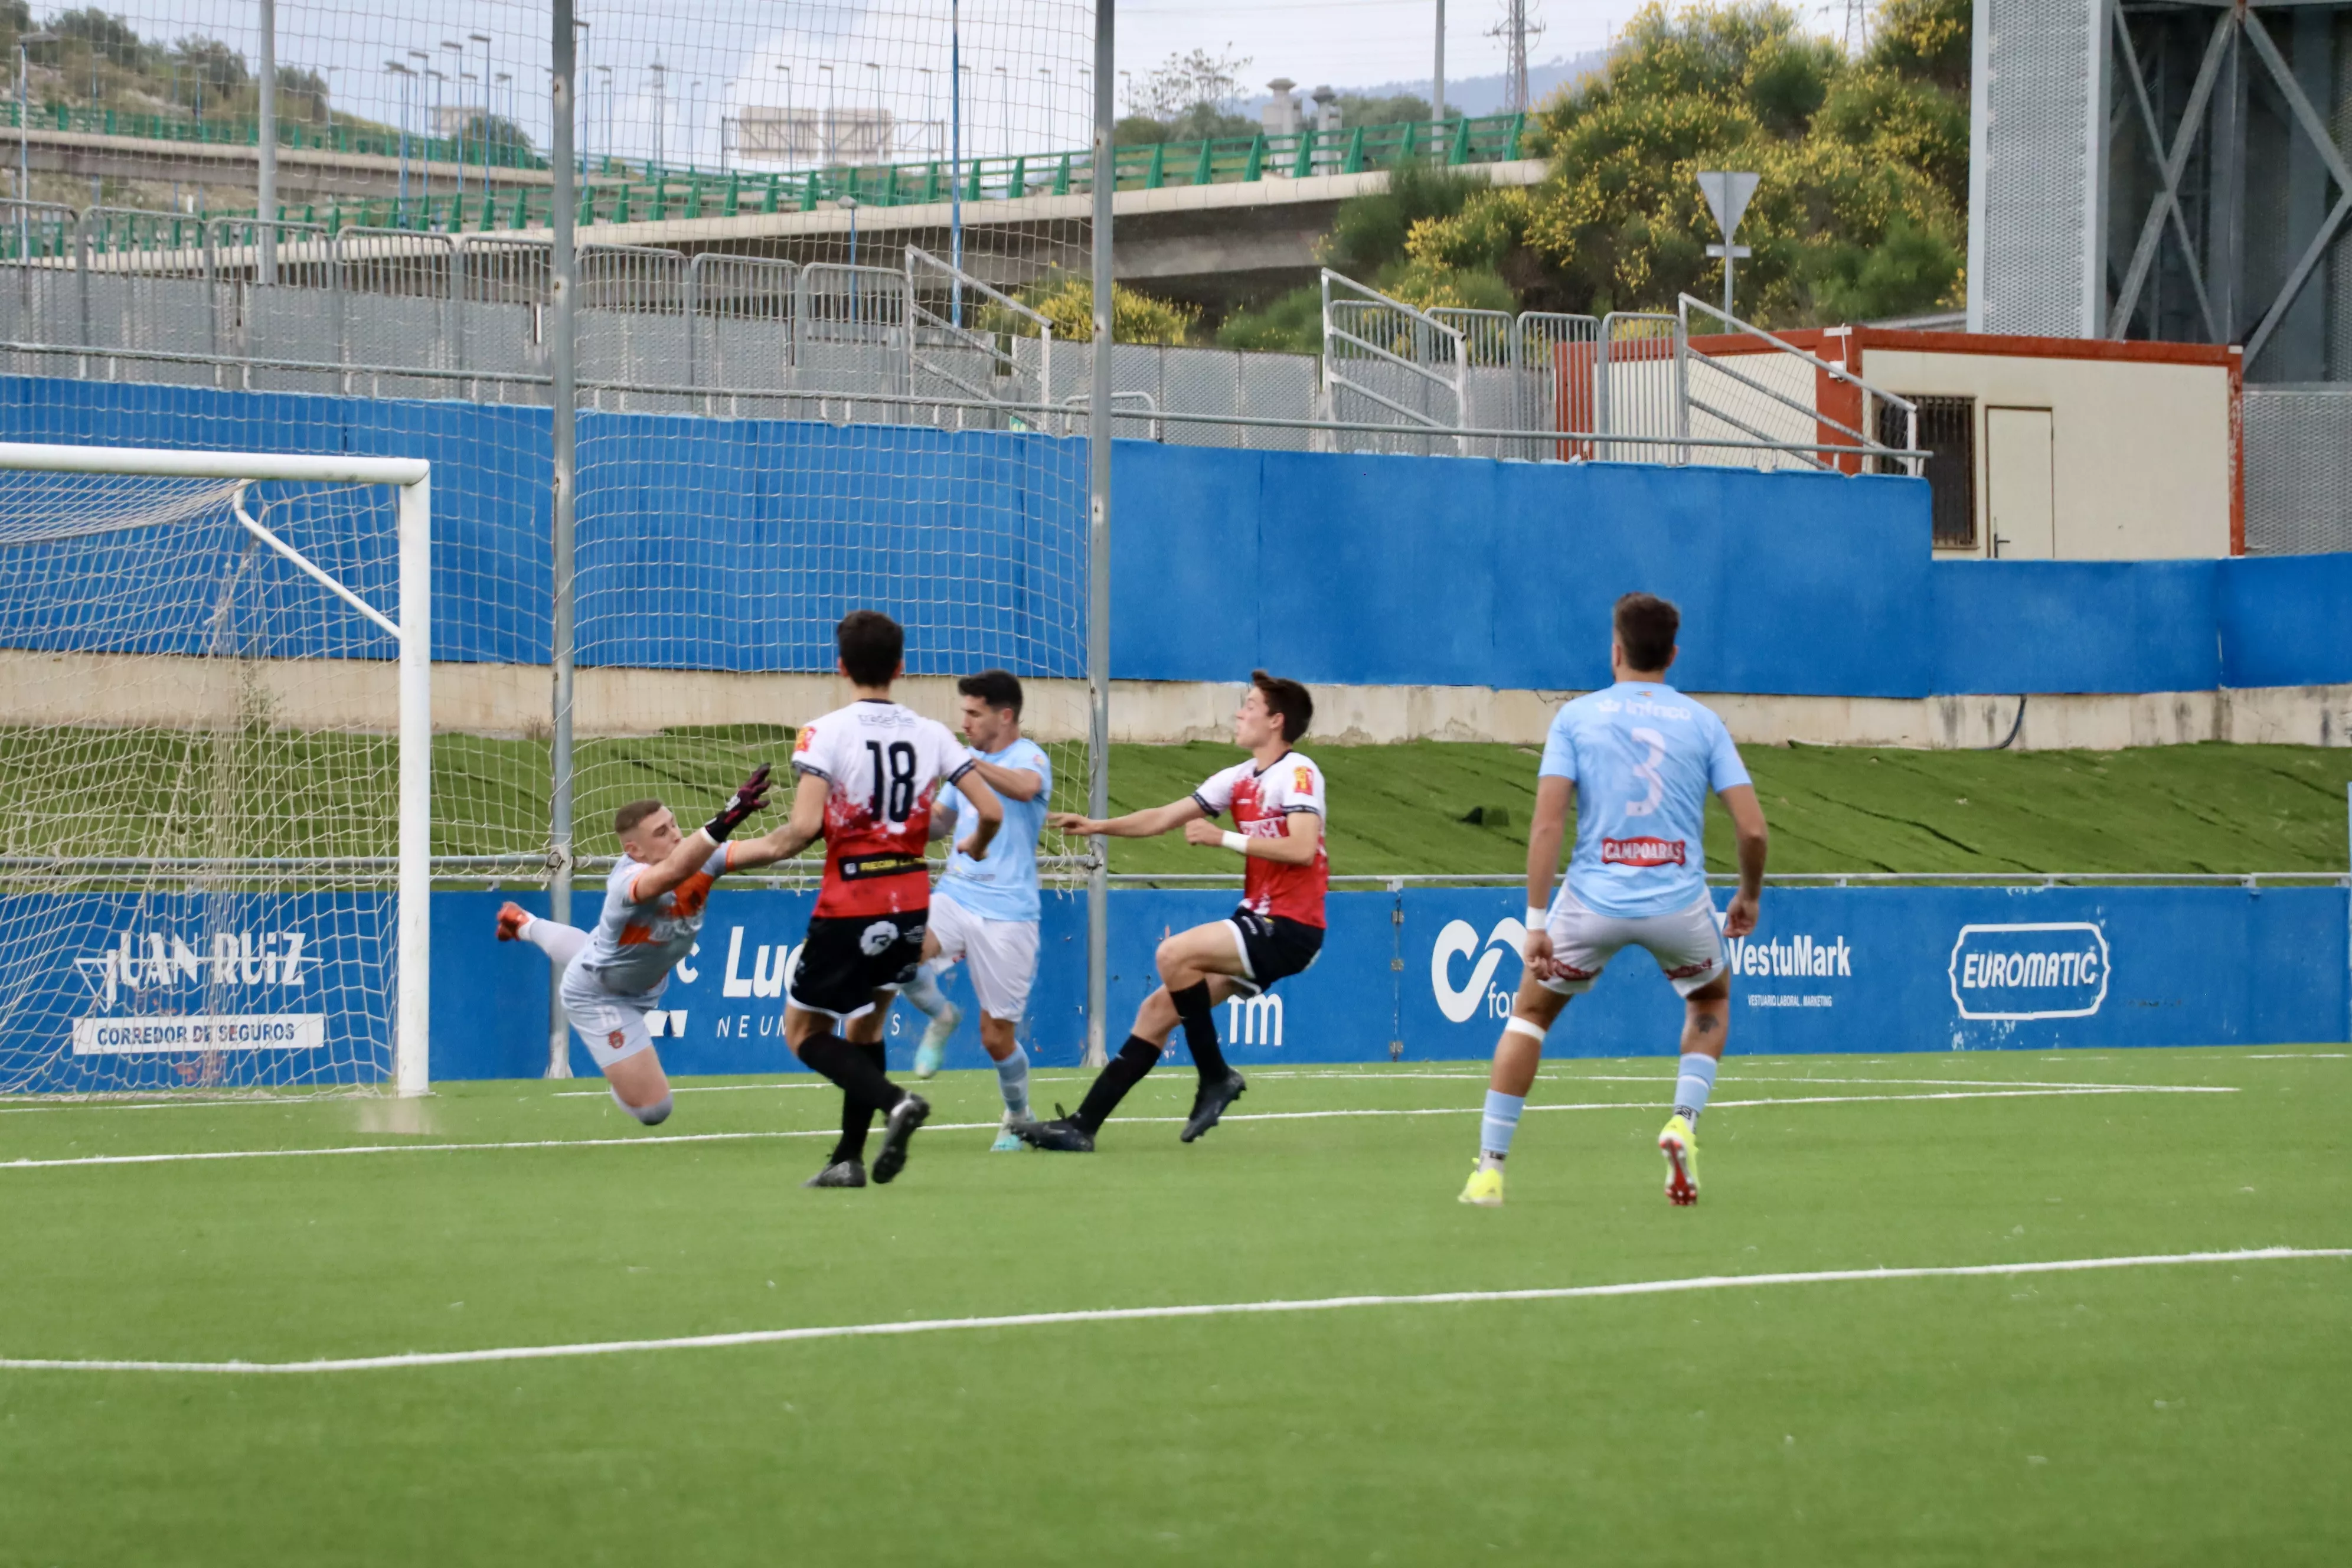 Ciudad de Lucena - Atco. Espeleño (1-0)